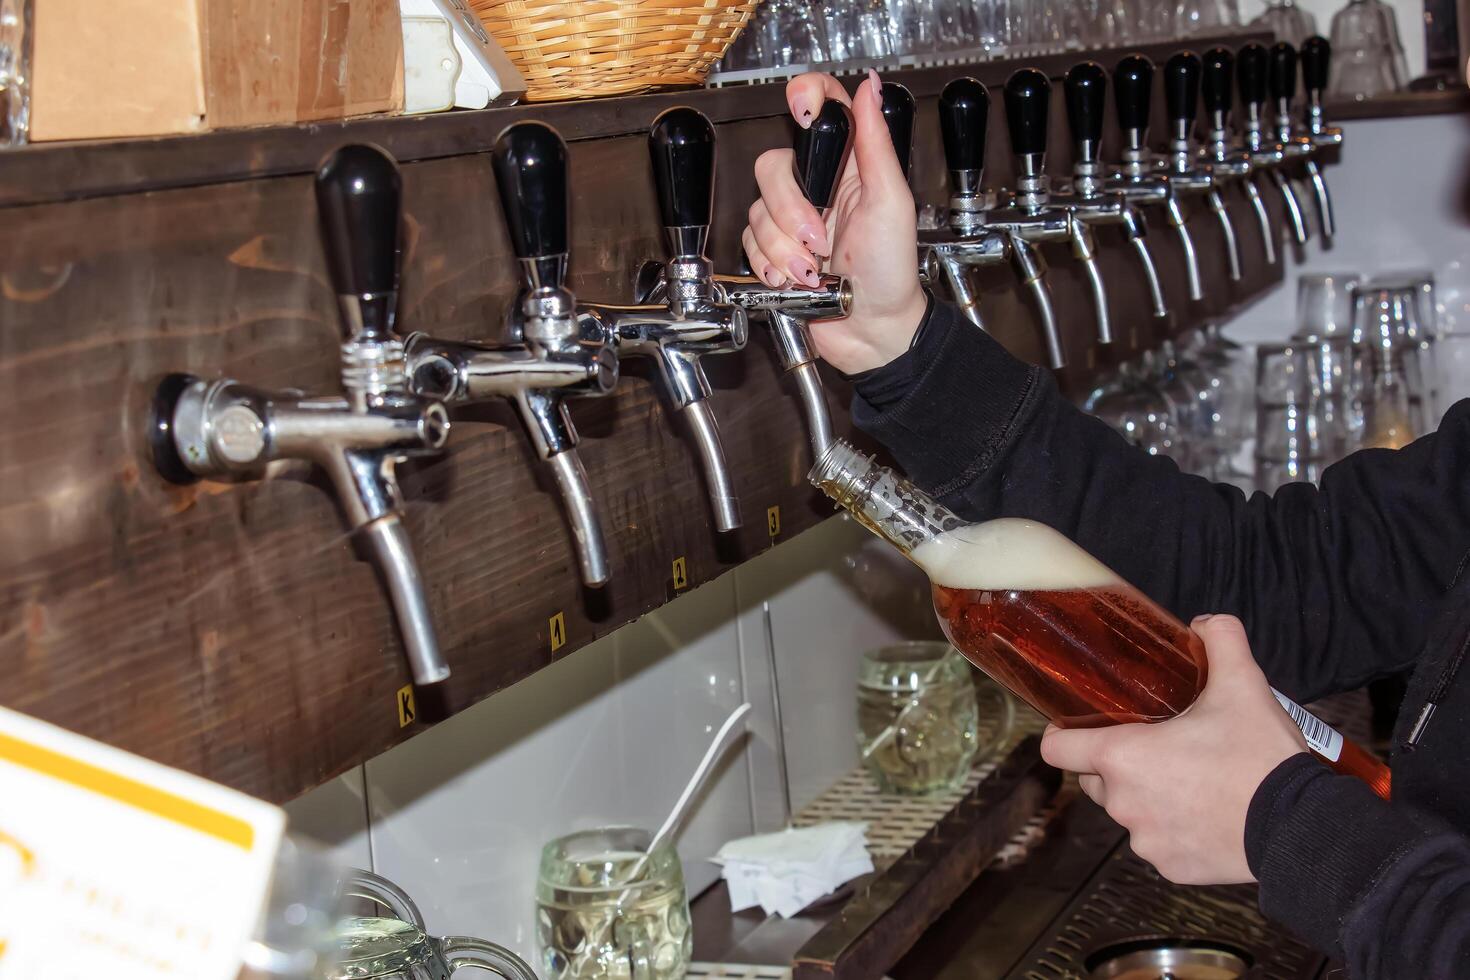 achter de balie. vrouwen handen prachtig en gemakkelijk gieten bier in een fles. foto